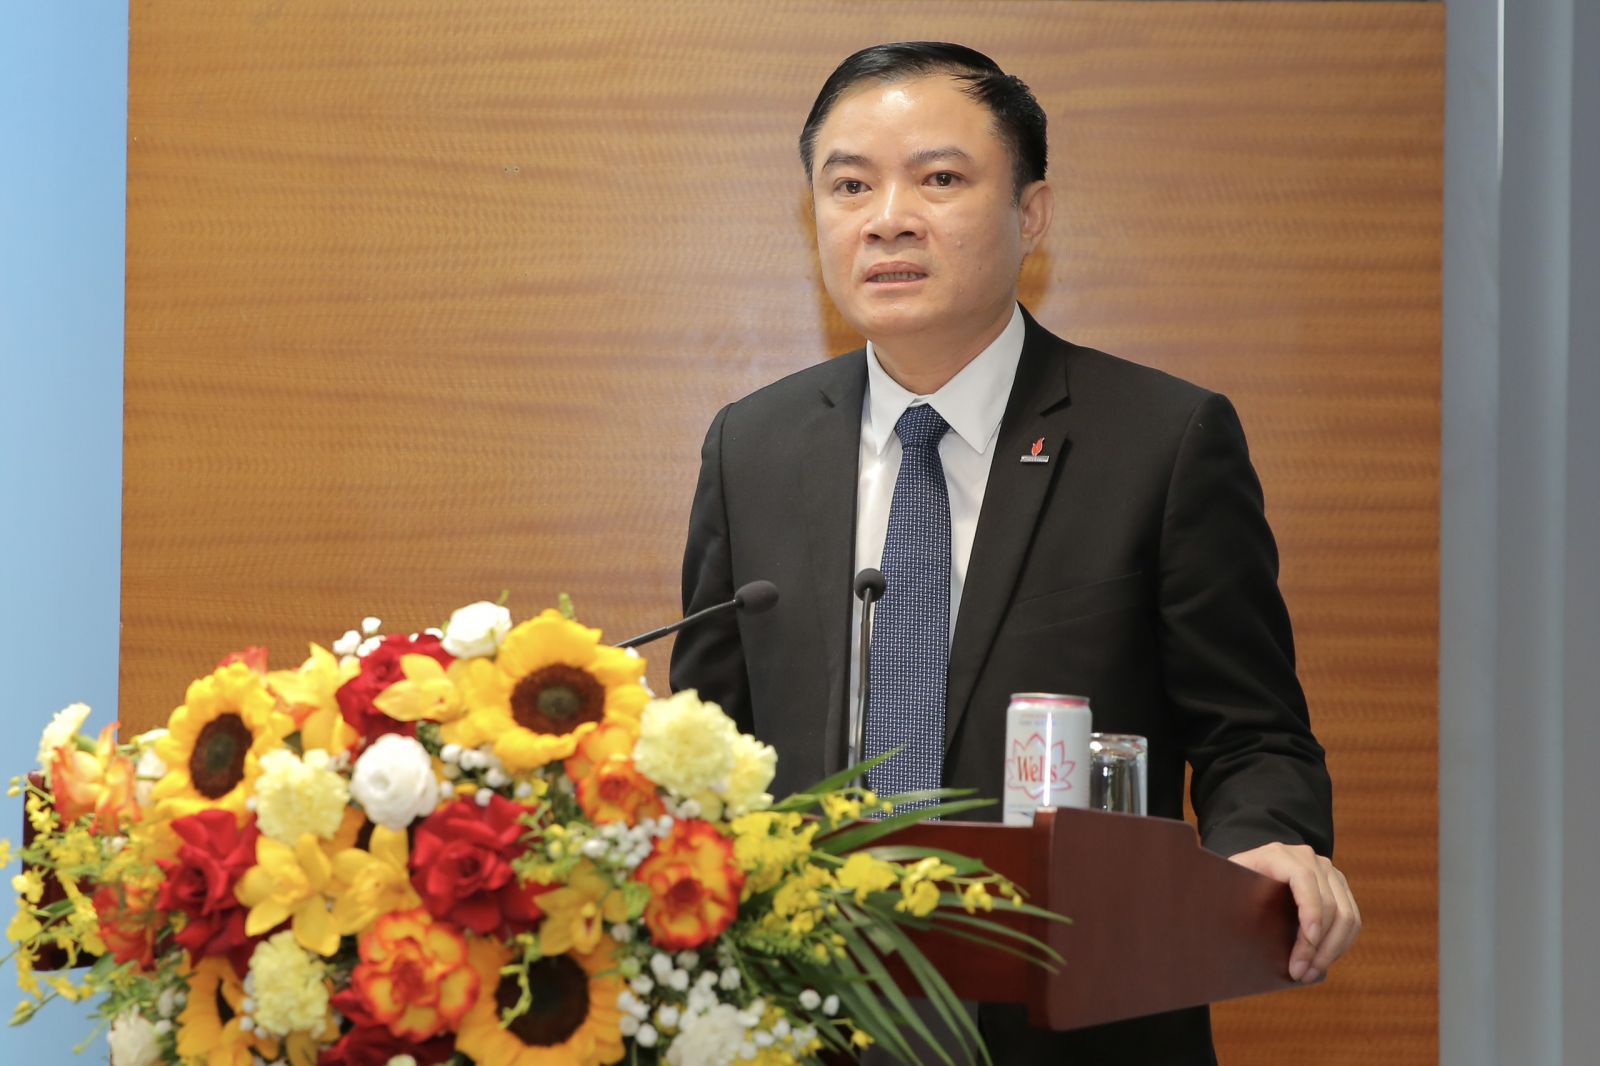 Đồng chí Lê Ngọc Sơn, Phó Bí thư Đảng ủy, Thành viên HĐTV, Tổng giám đốc Tập đoàn phát biểu nhận nhiệm 